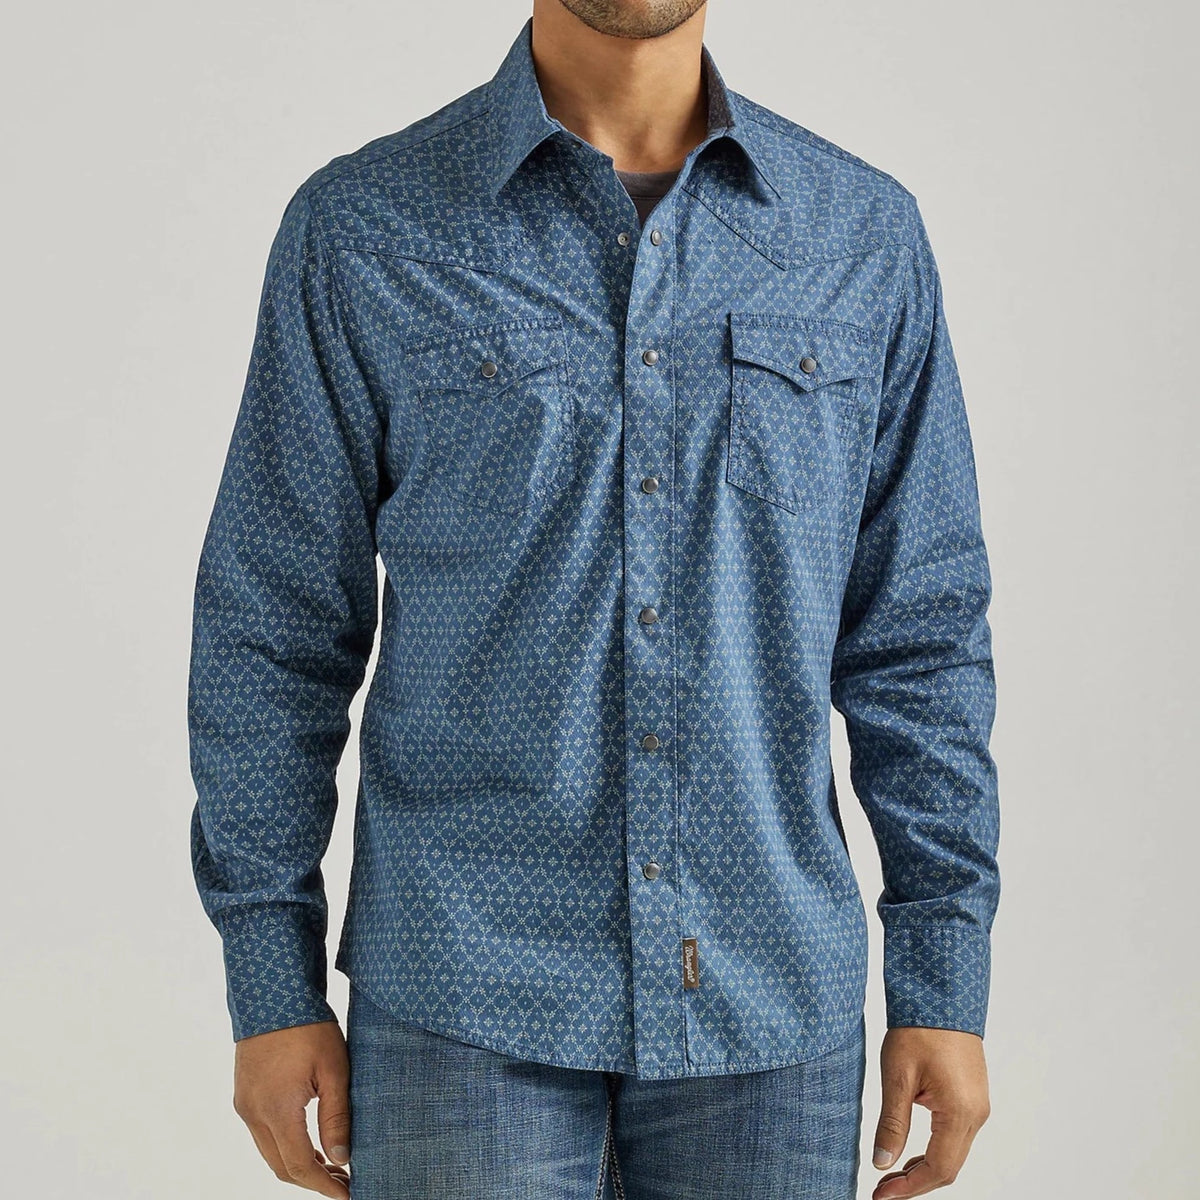 Men's Wrangler Retro Premium Western Snap Shirt in Blue Flower Chain